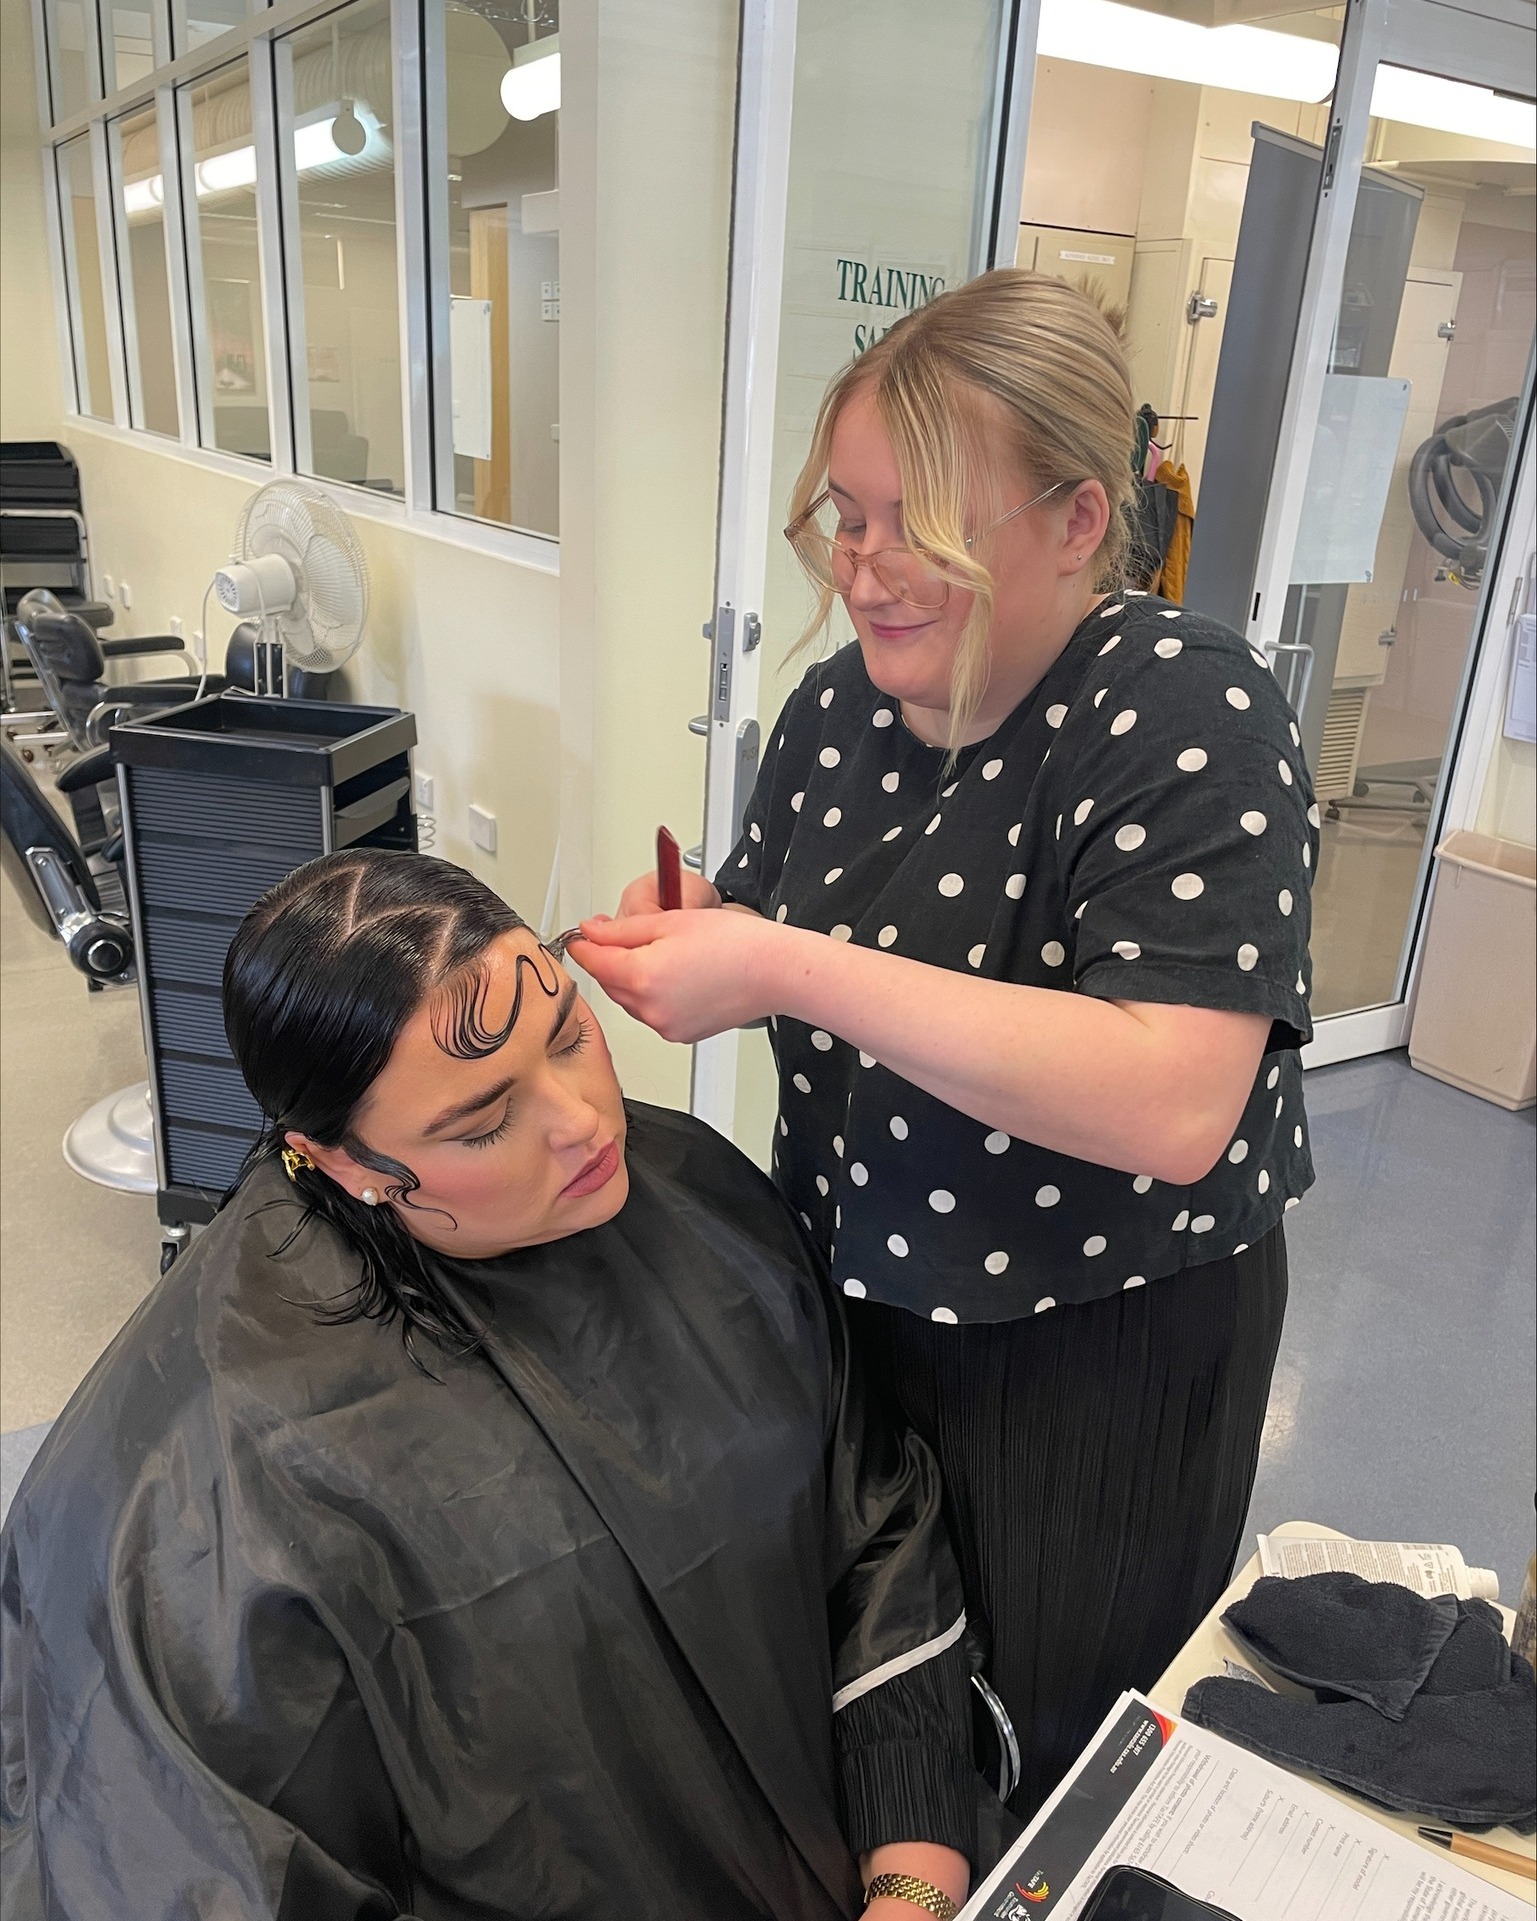 Hairdresser cuts a woman's hair